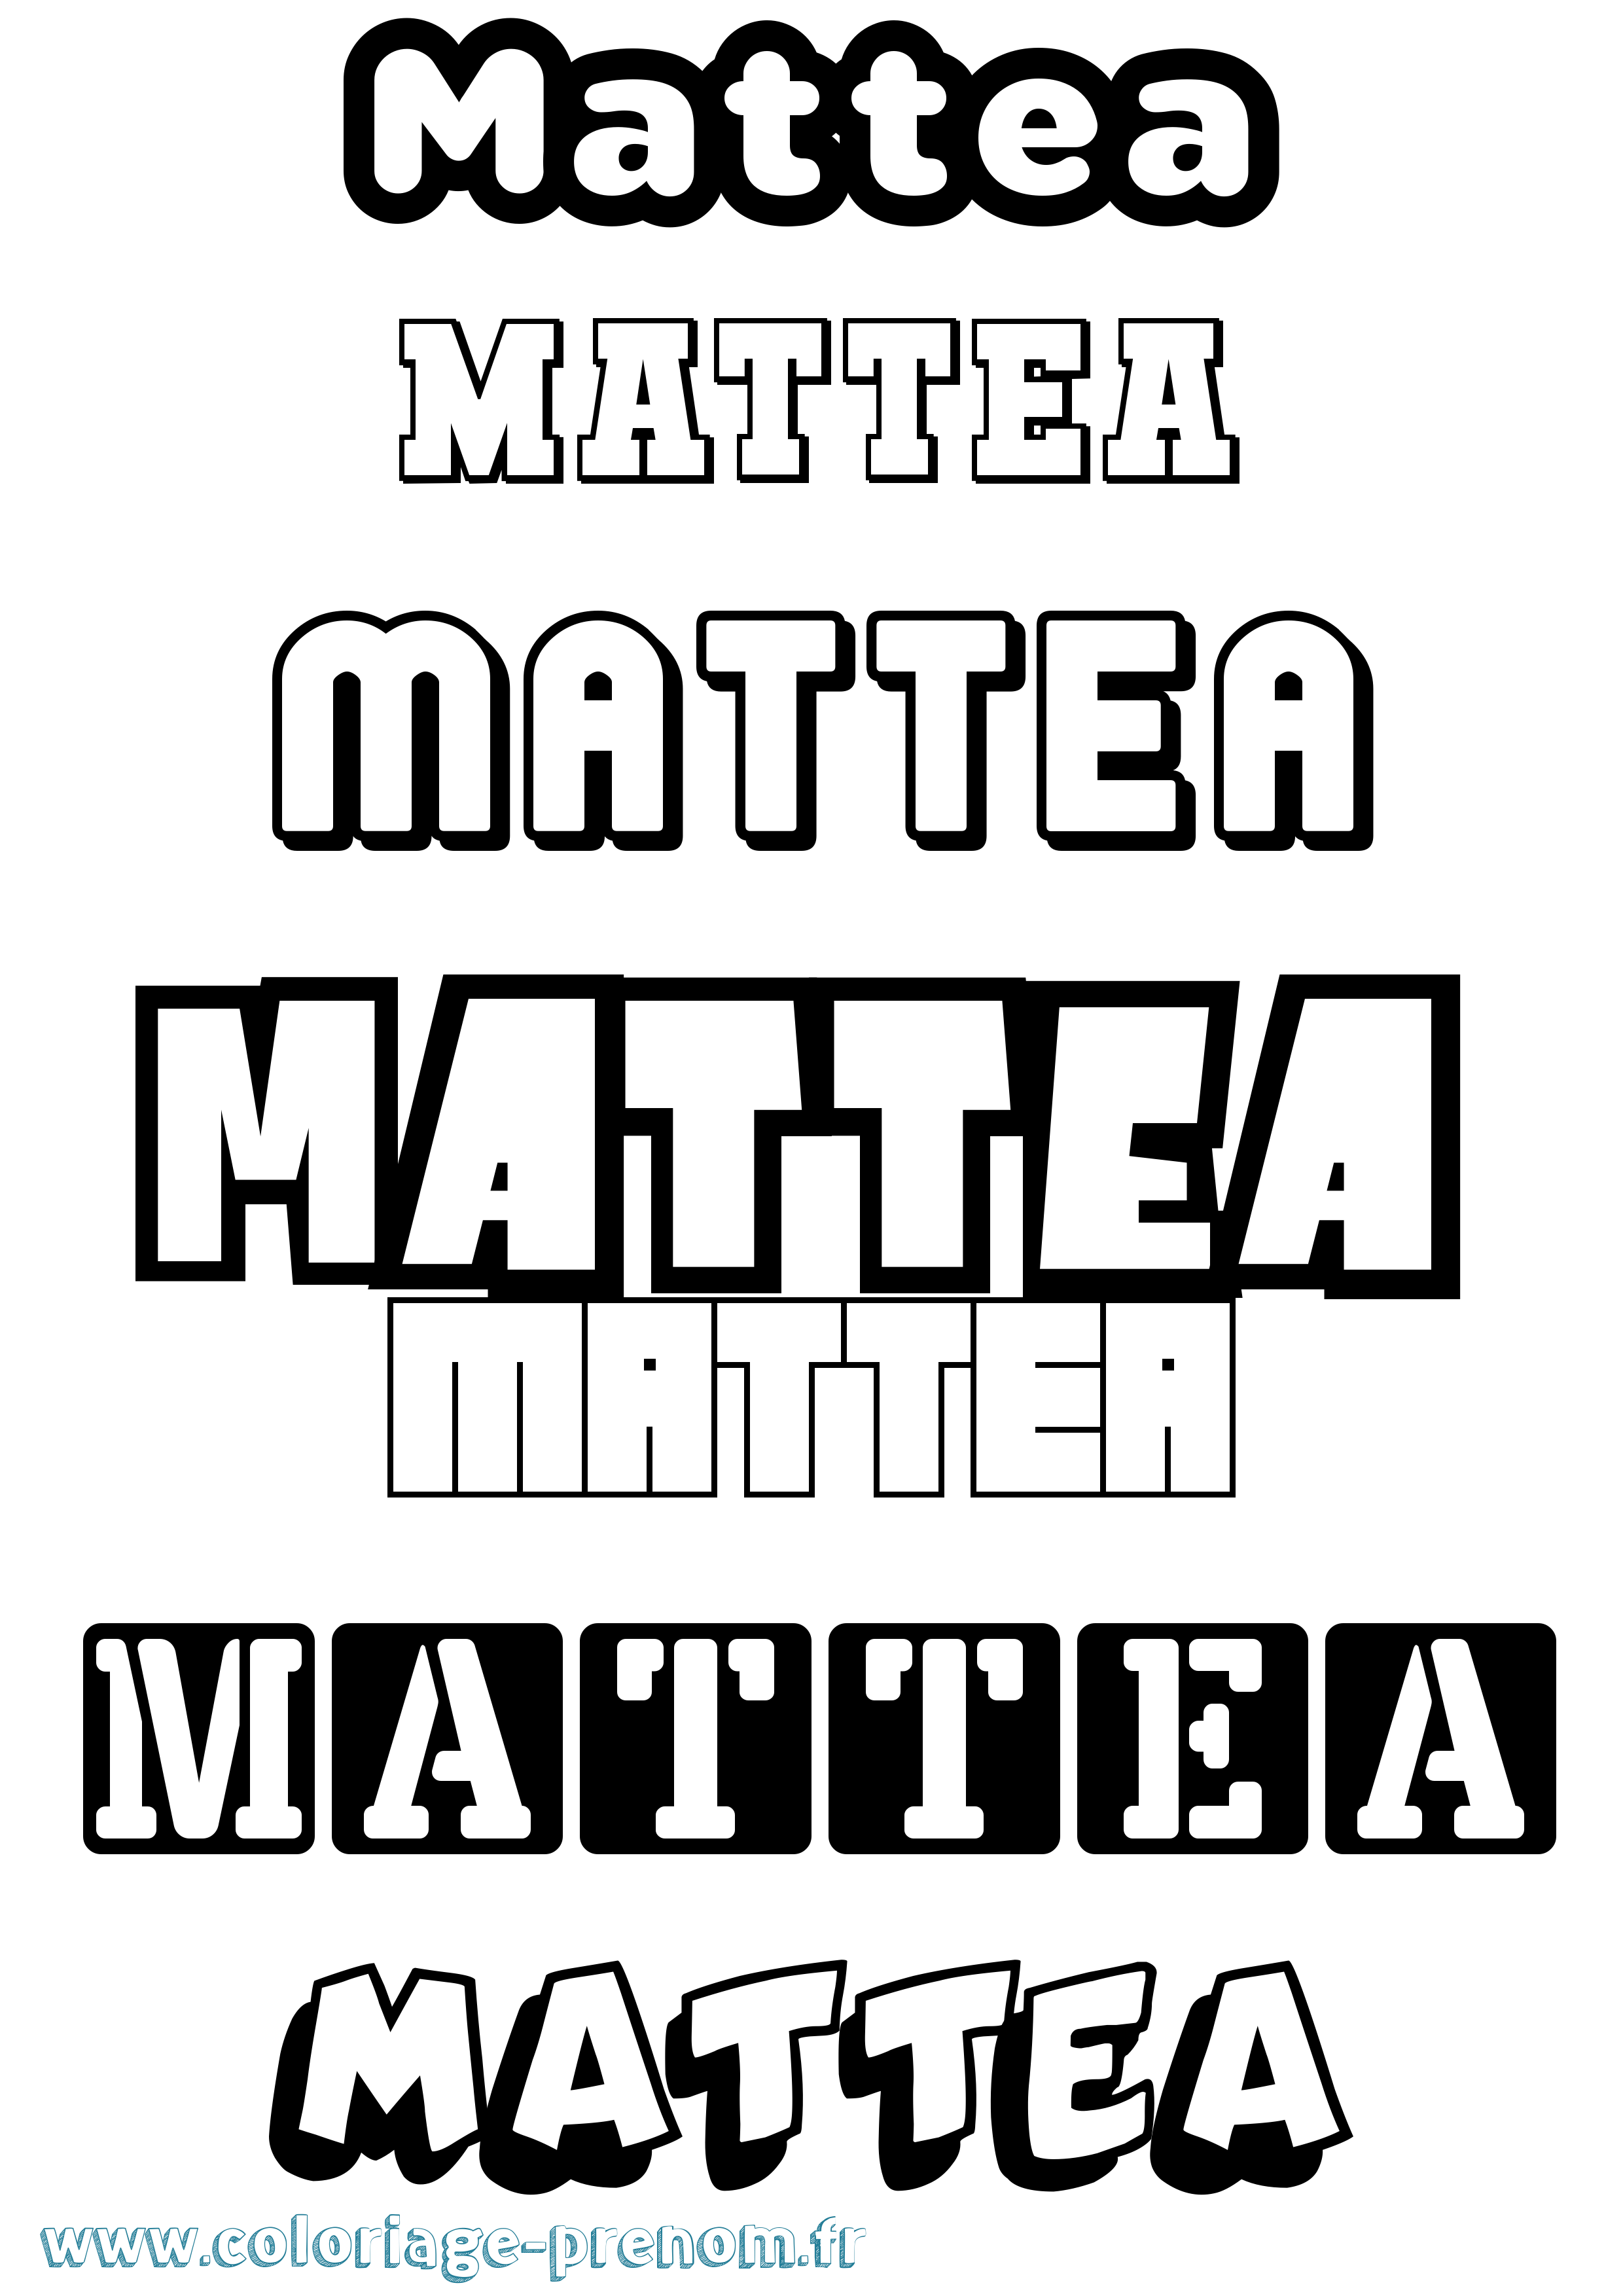 Coloriage prénom Mattea Simple